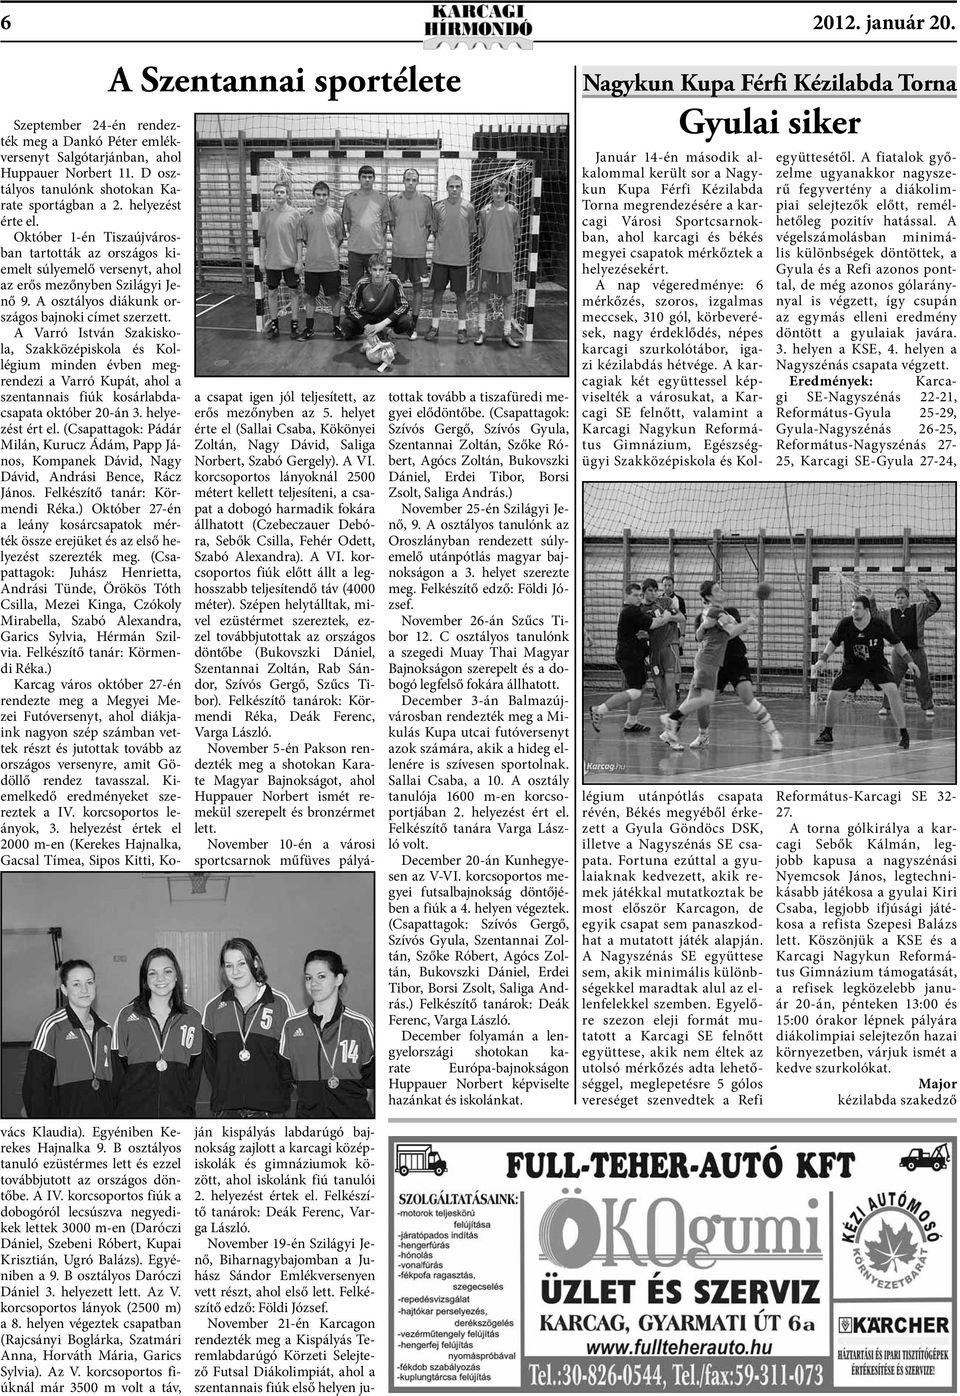 November 21-én Karcagon rendezték meg a Kispályás Teremlabdarúgó Körzeti Selejtező Futsal Diákolimpiát, ahol a szentannais fiúk első helyen jutottak tovább a tiszafüredi megyei elődöntőbe.